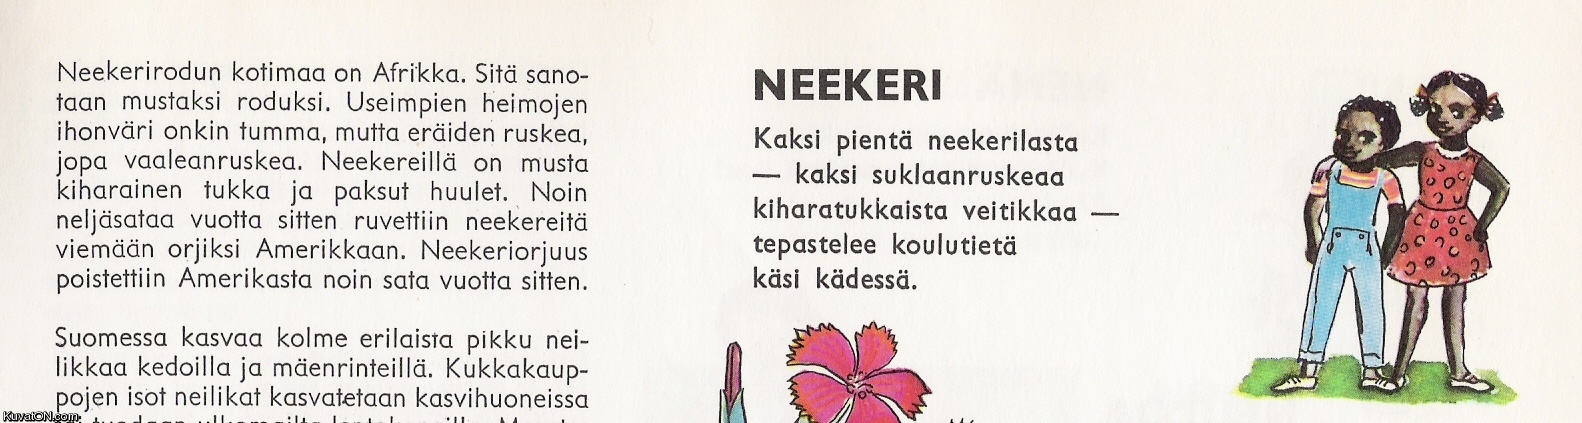 lasten_tietosanakirja_1971.jpg